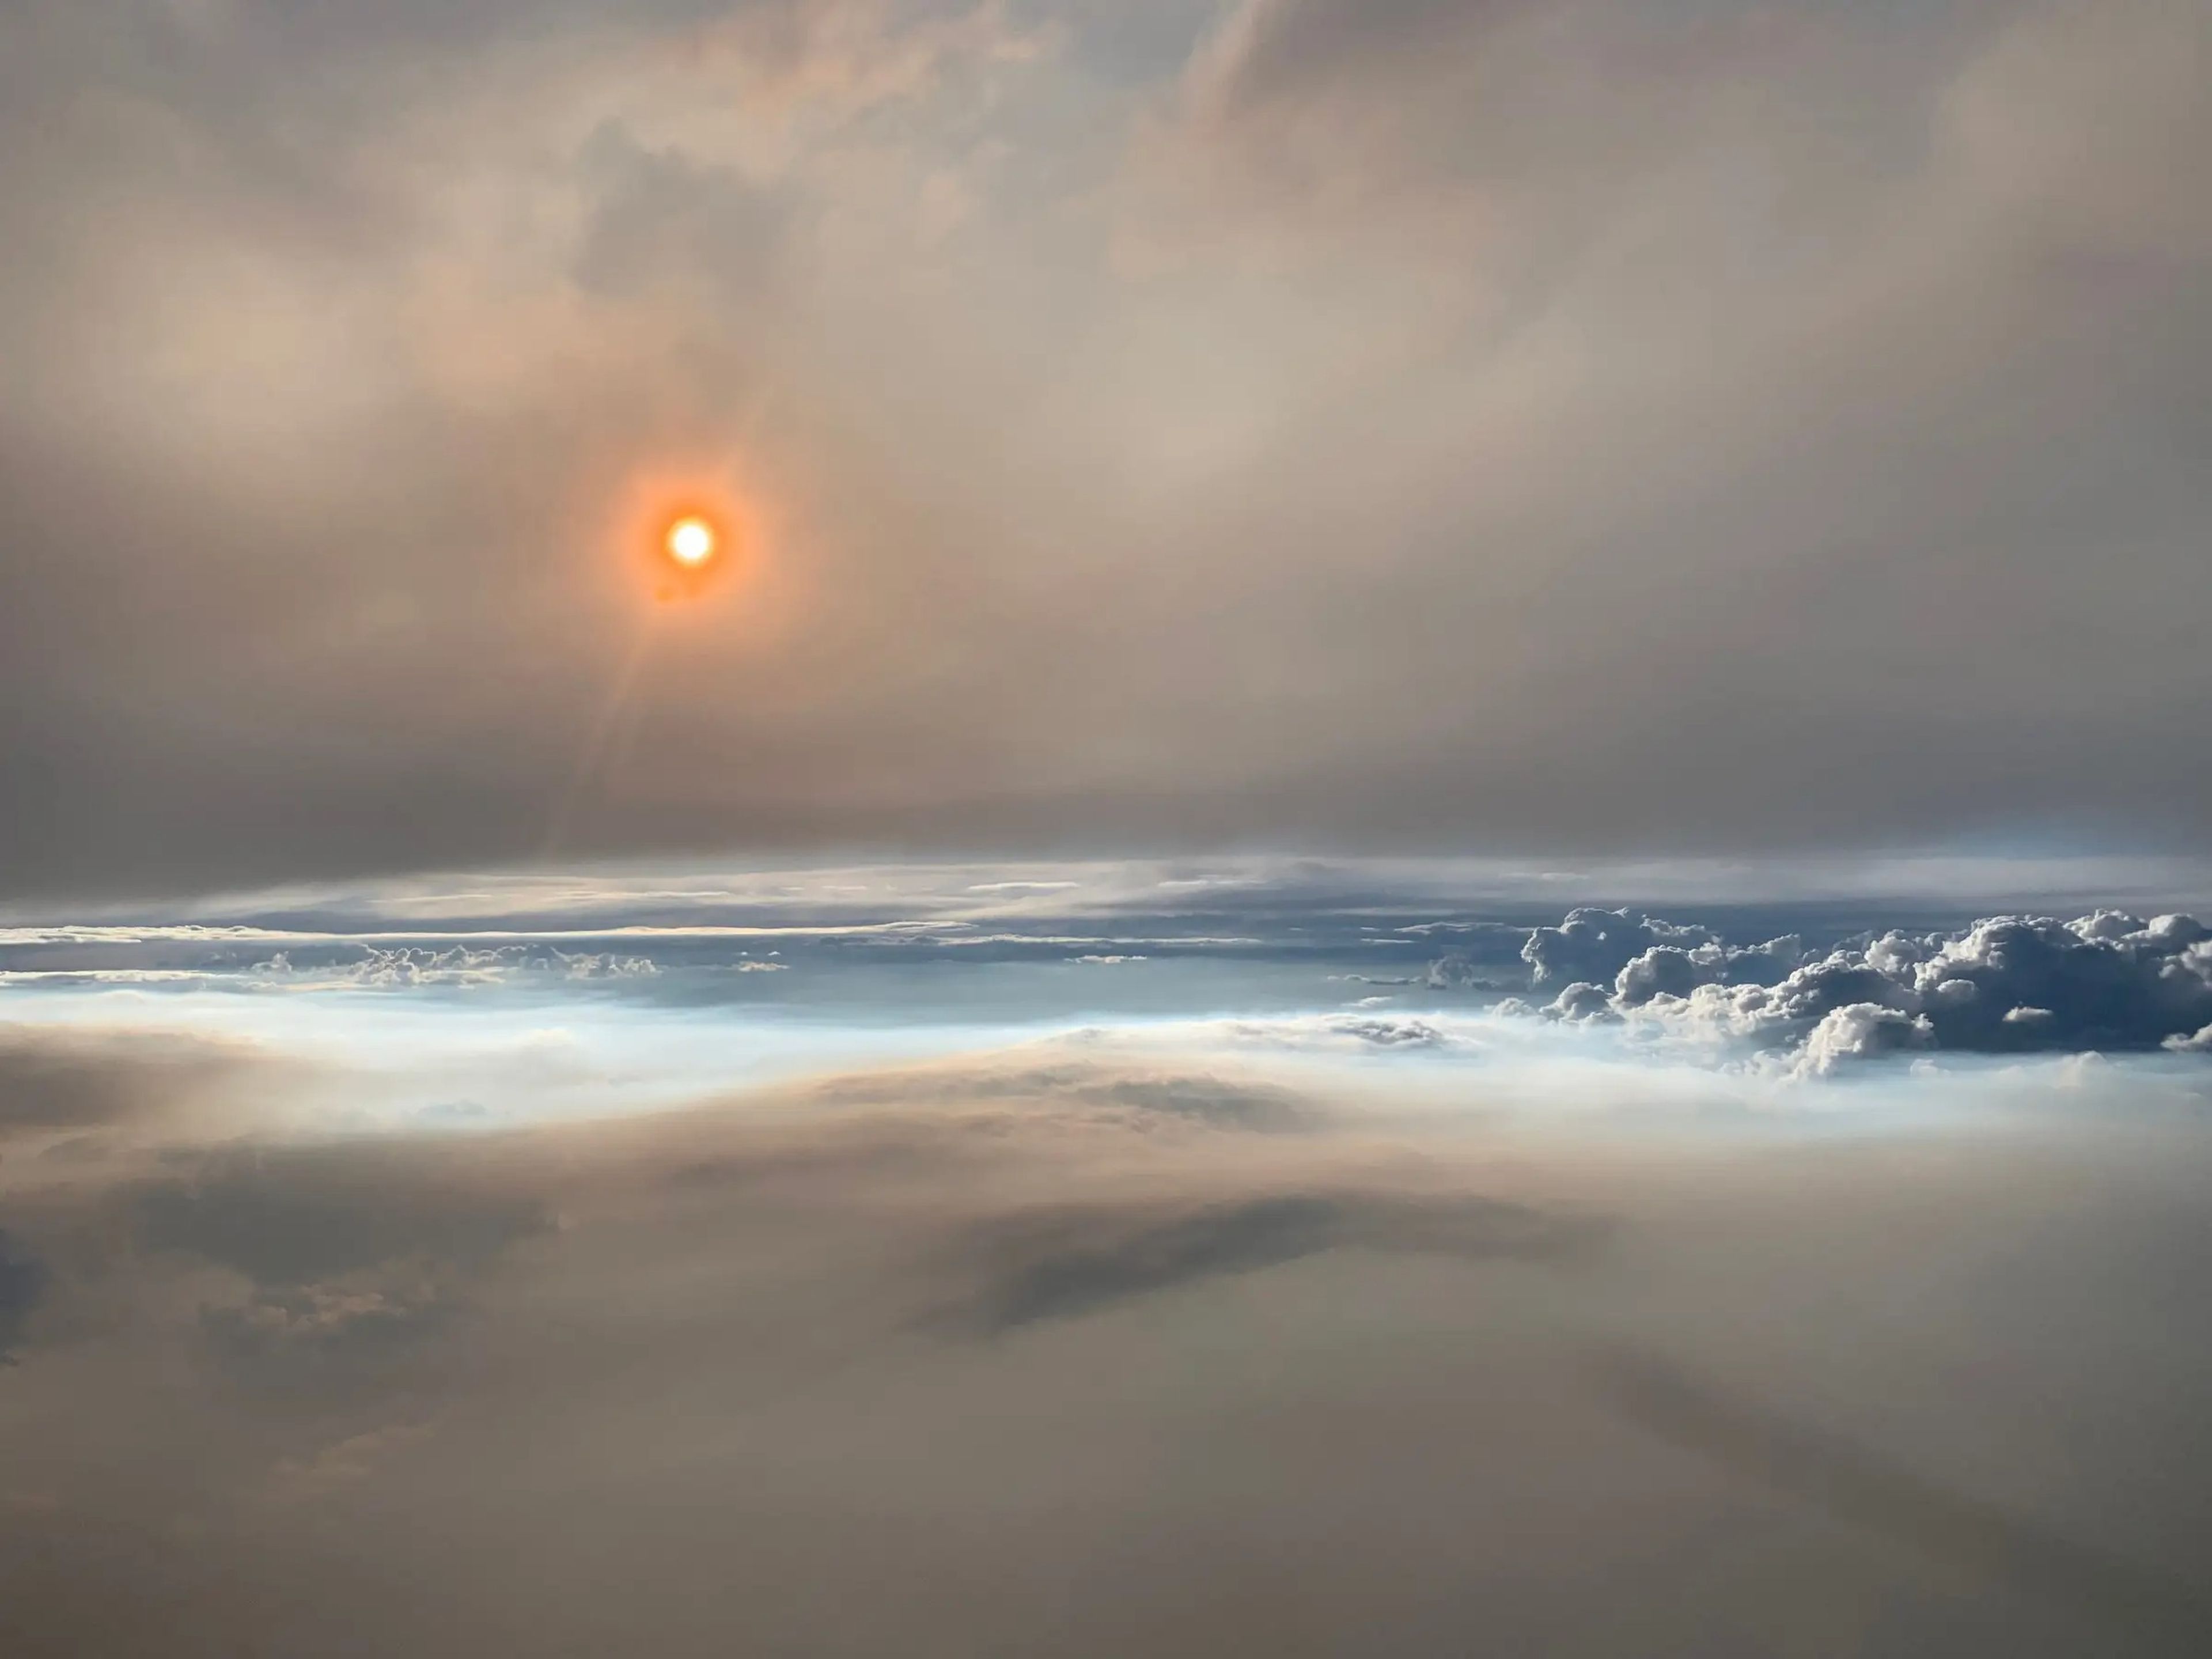 El laboratorio volador DC-8 de la NASA pasó directamente a través de una gran nube de humo pirocumulonimbus a unos 30.000 pies.